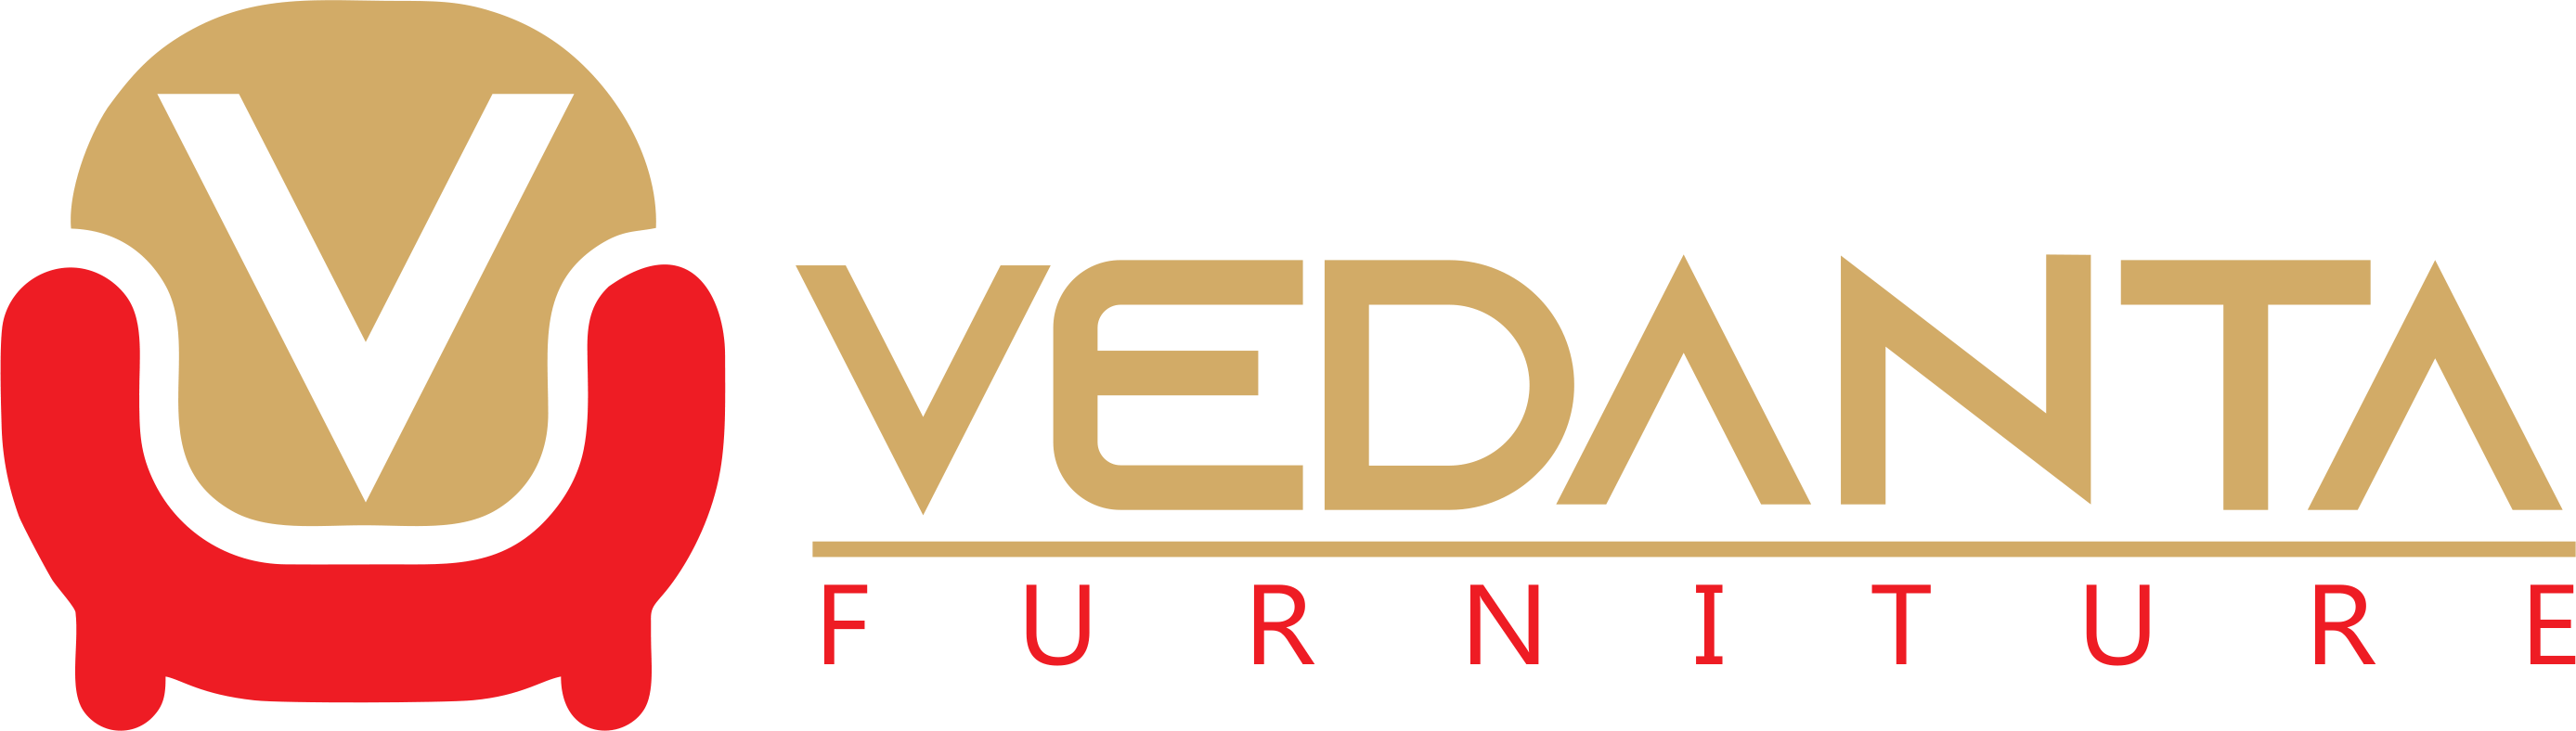 Vedanta Foundation on X: 